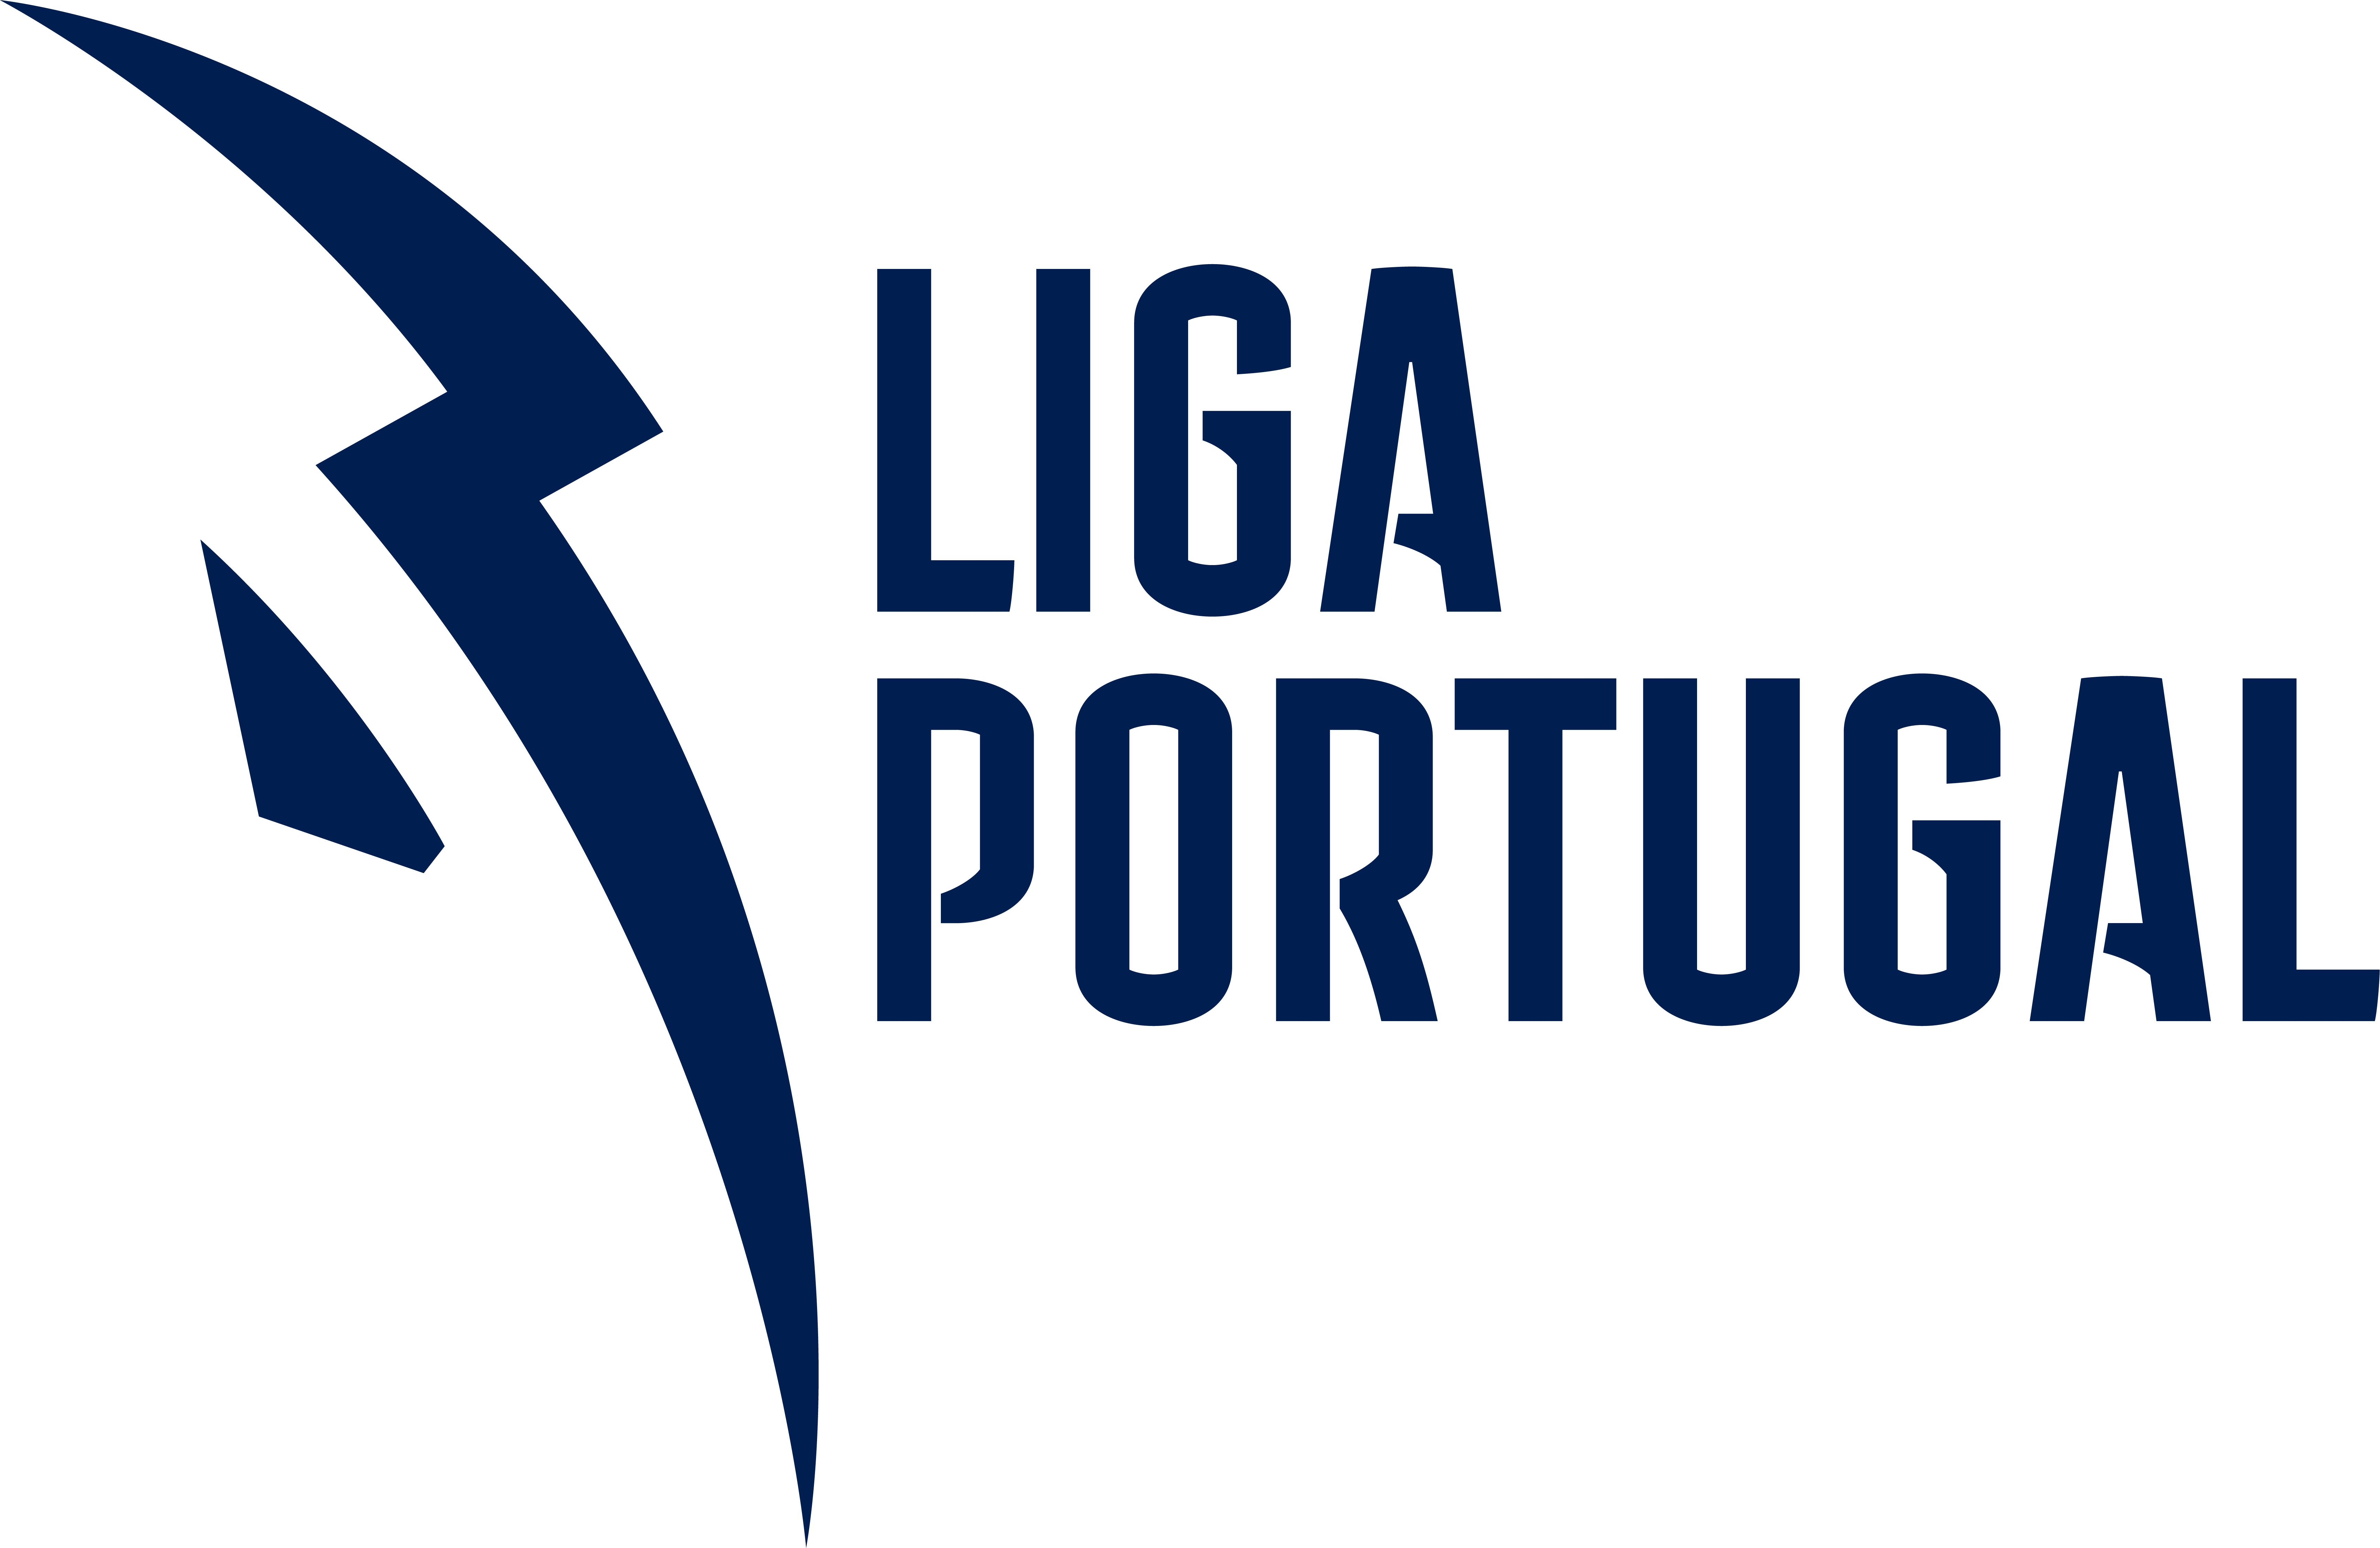 Liga Portugal  European Leagues